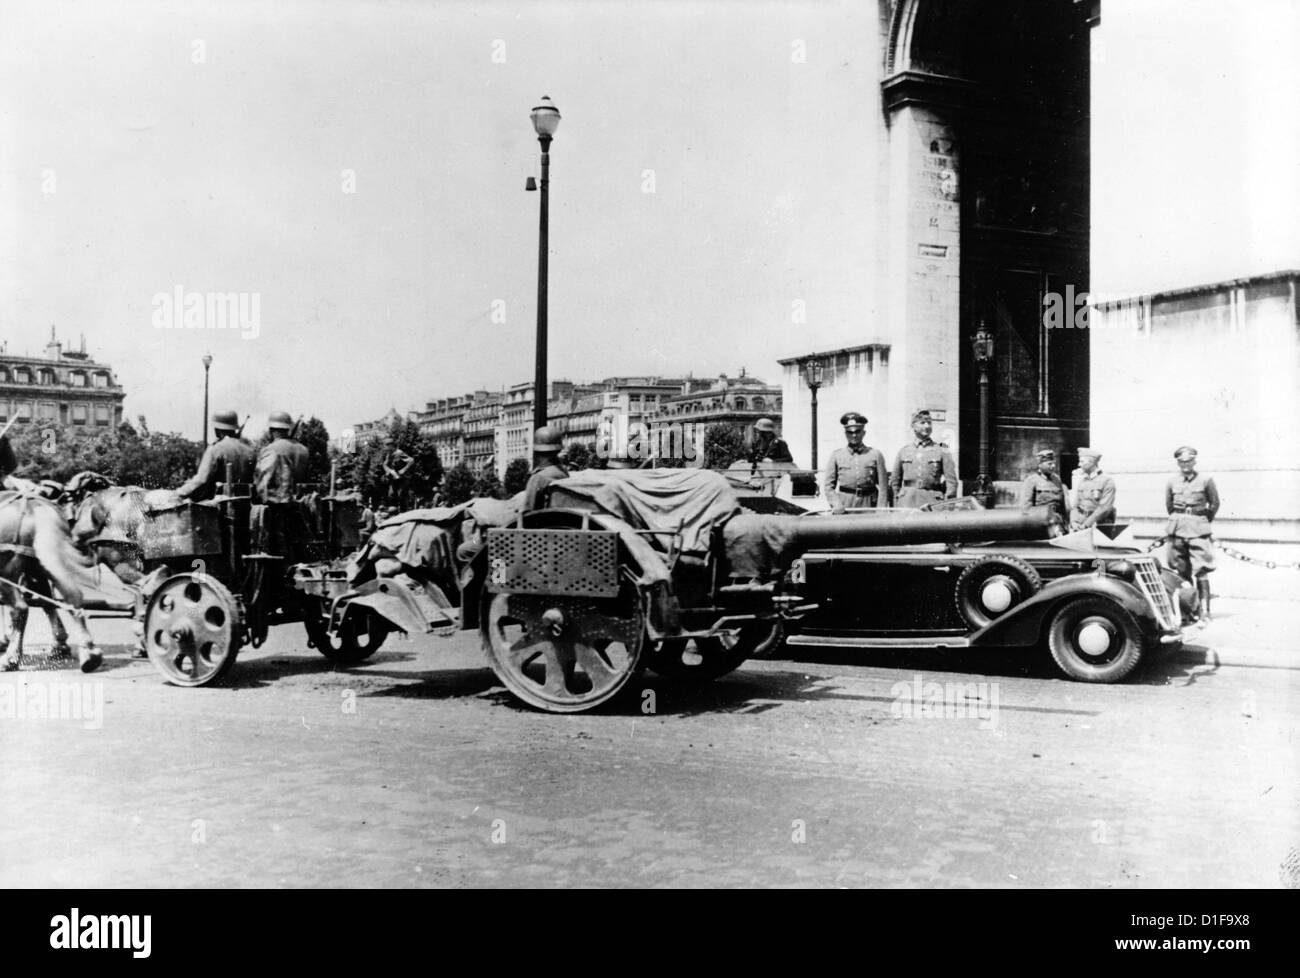 La distilleria tedesca passa l'Arco di Trionfo a Parigi, in Francia, nel giugno 1940. Fotoarchiv für Zeitgeschichte Foto Stock